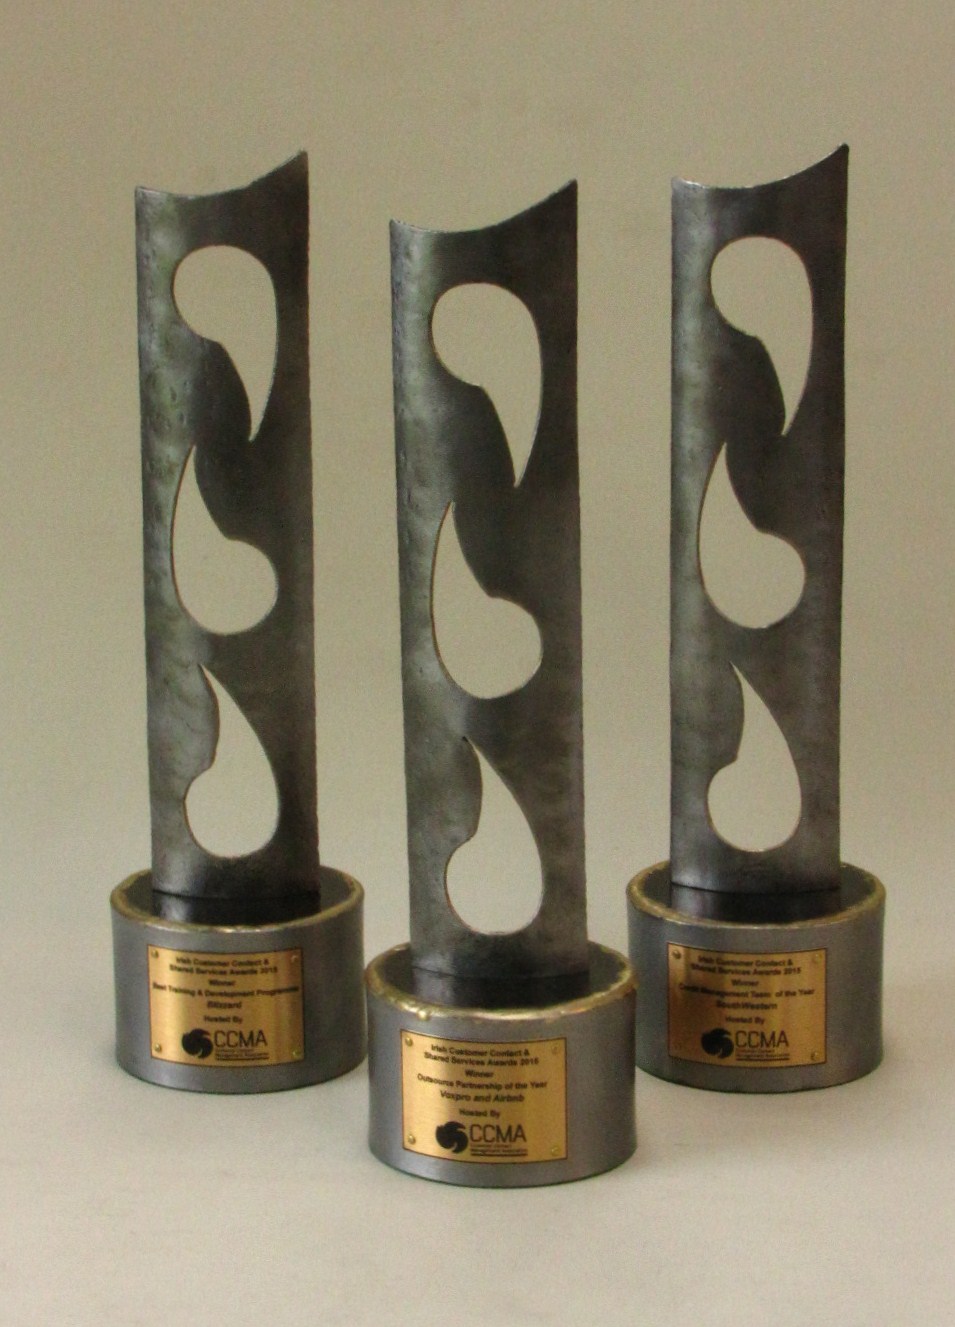 CCMA awards